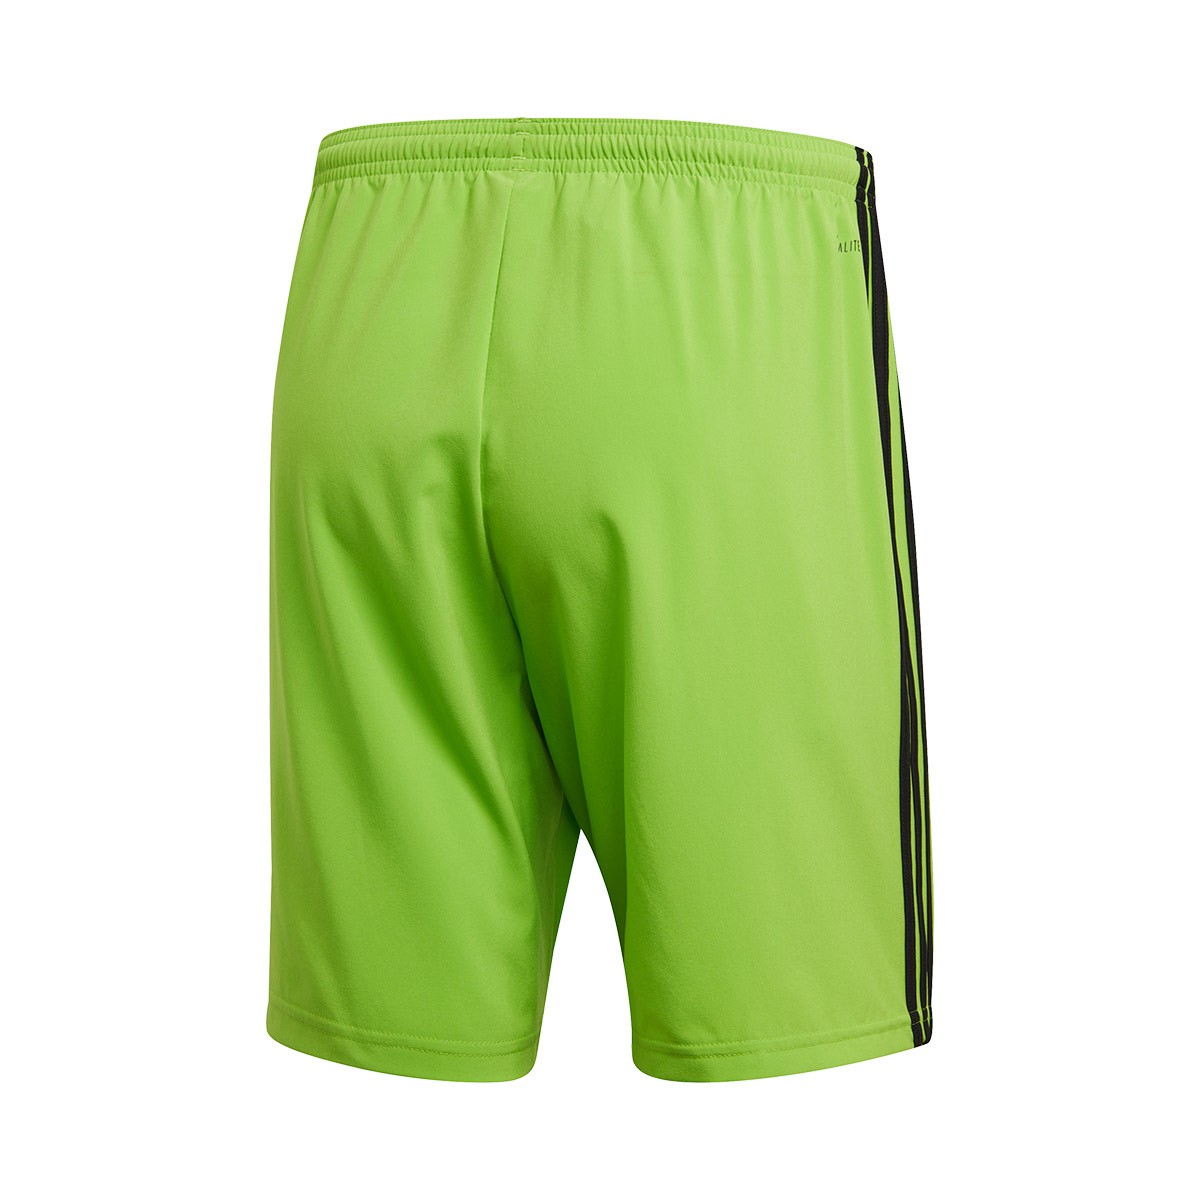 green adidas football shorts